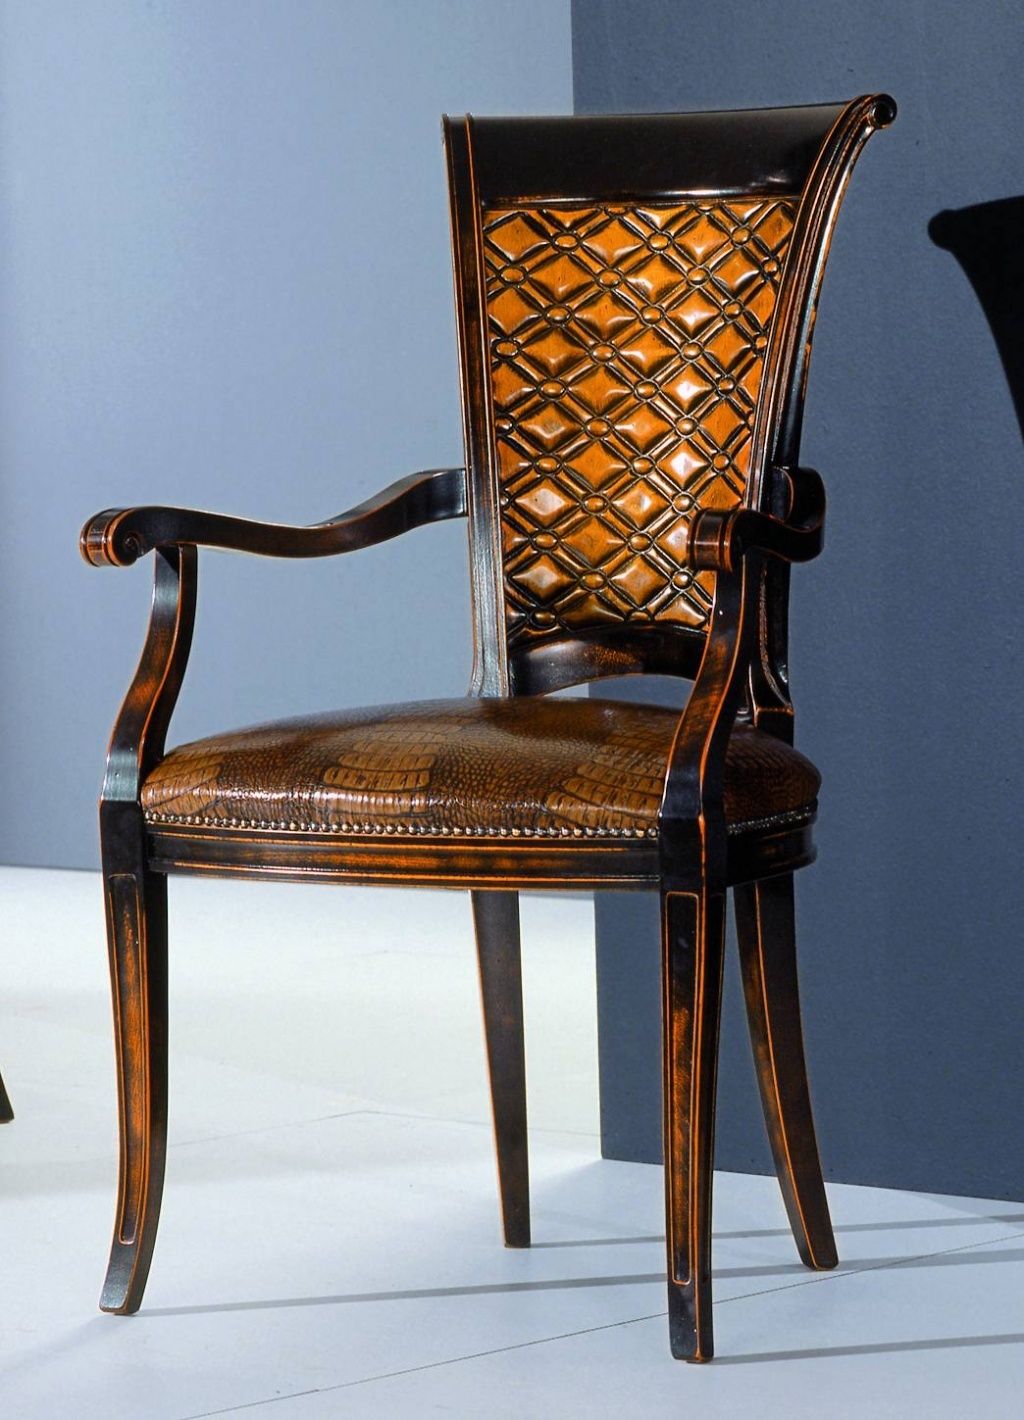 Stylová židle s opěrkami hnědá kůže zlato černý efekt 58x58x100 Mdum - M DUM.cz